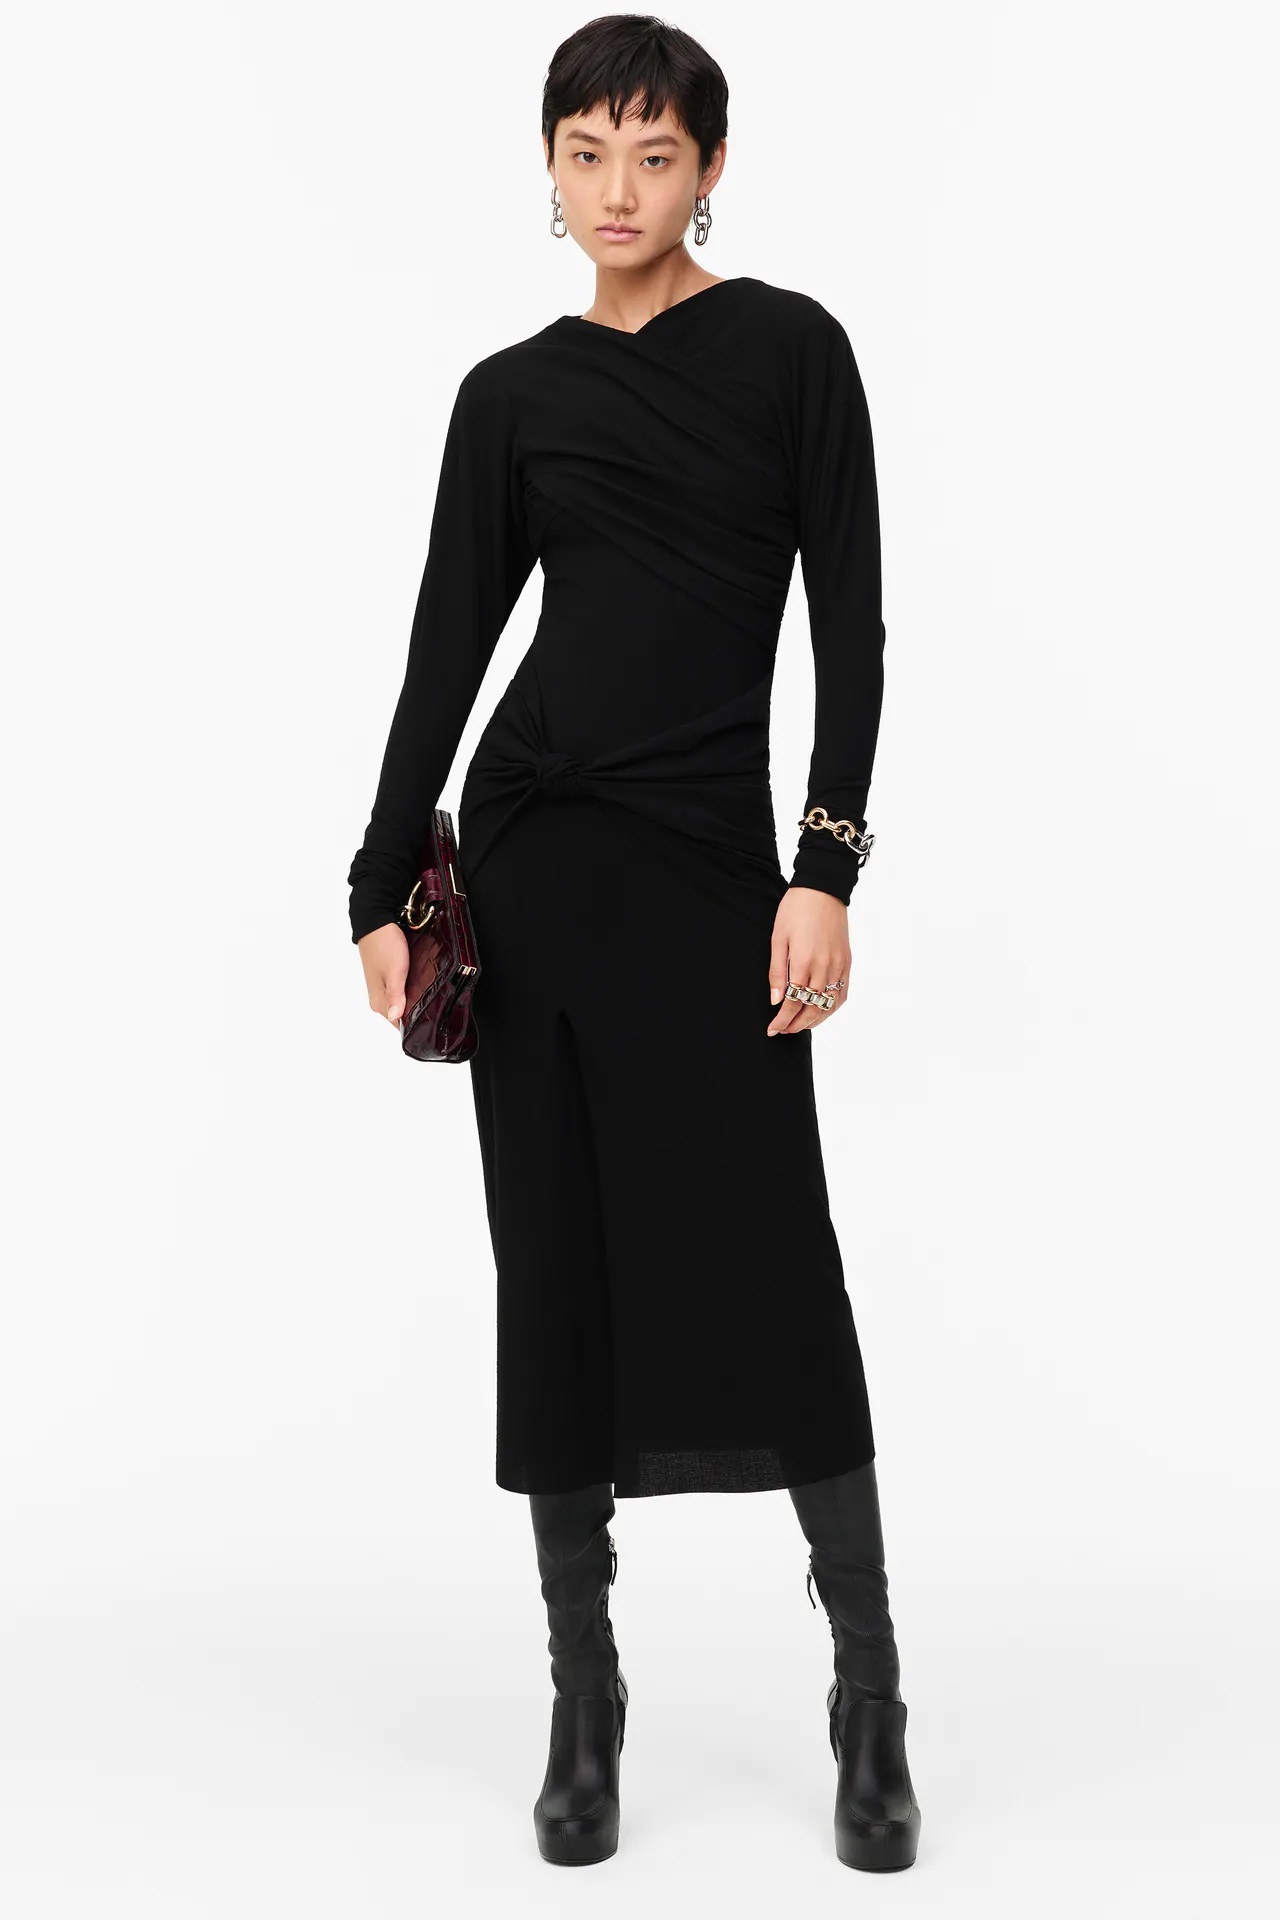 Zara tiene la versión low cost del vestido negro drapeado de la reina Letizia 